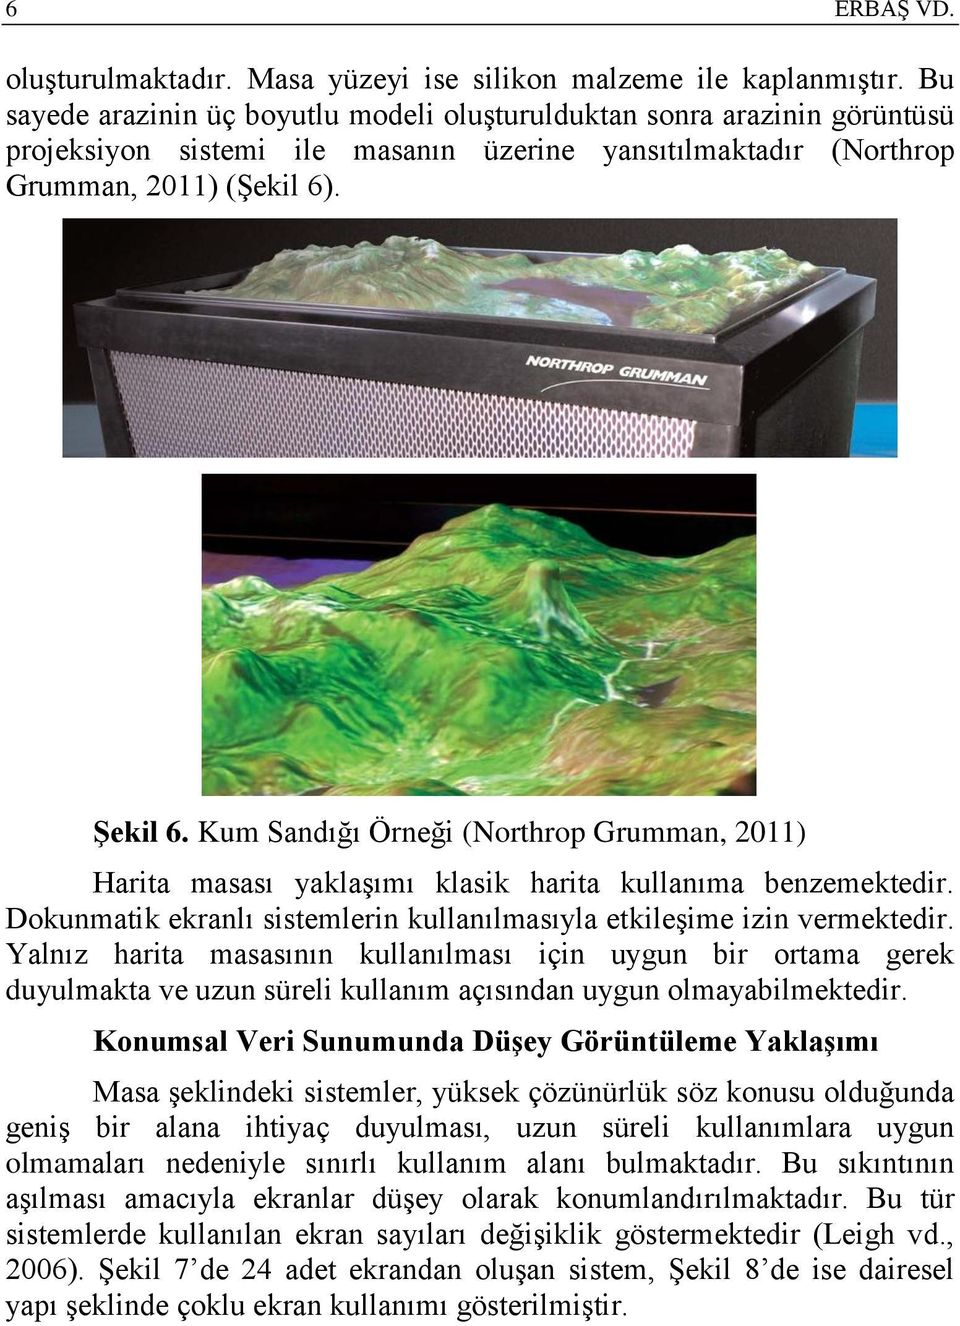 Kum Sandığı Örneği (Northrop Grumman, 2011) Harita masası yaklaşımı klasik harita kullanıma benzemektedir. Dokunmatik ekranlı sistemlerin kullanılmasıyla etkileşime izin vermektedir.